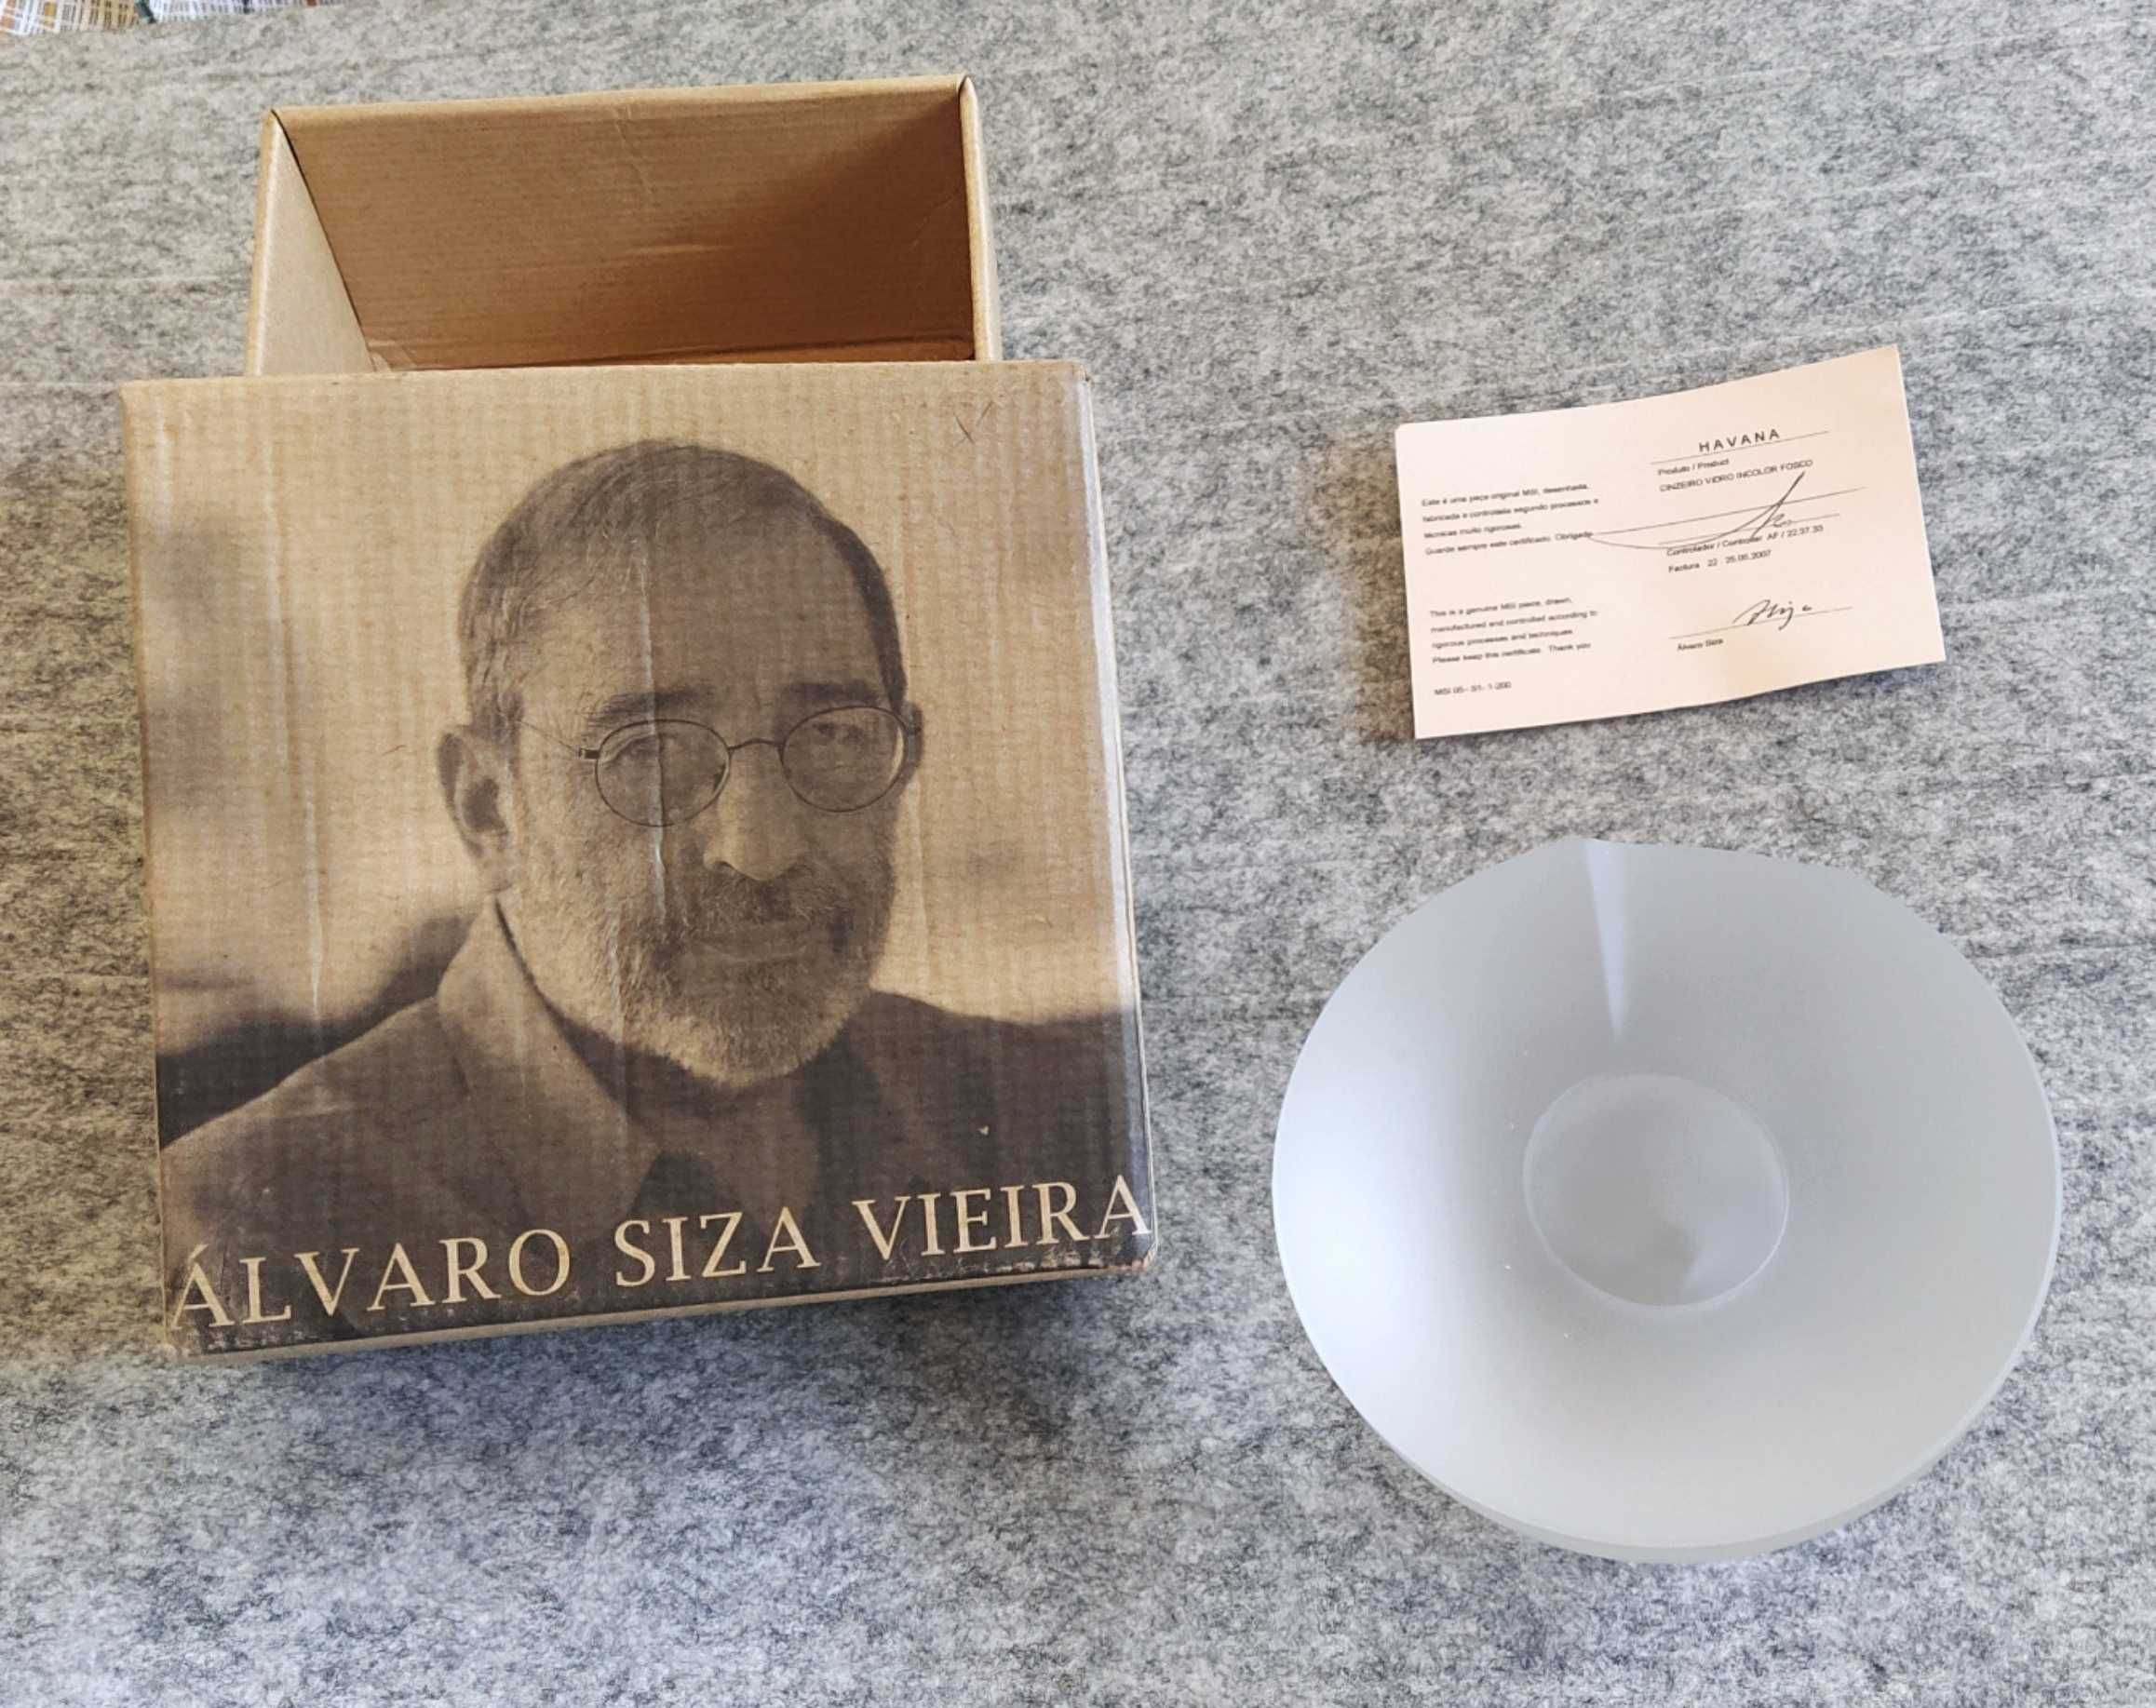 Cinzeiro Havana - Álvaro Siza Vieira
Branco Fosco